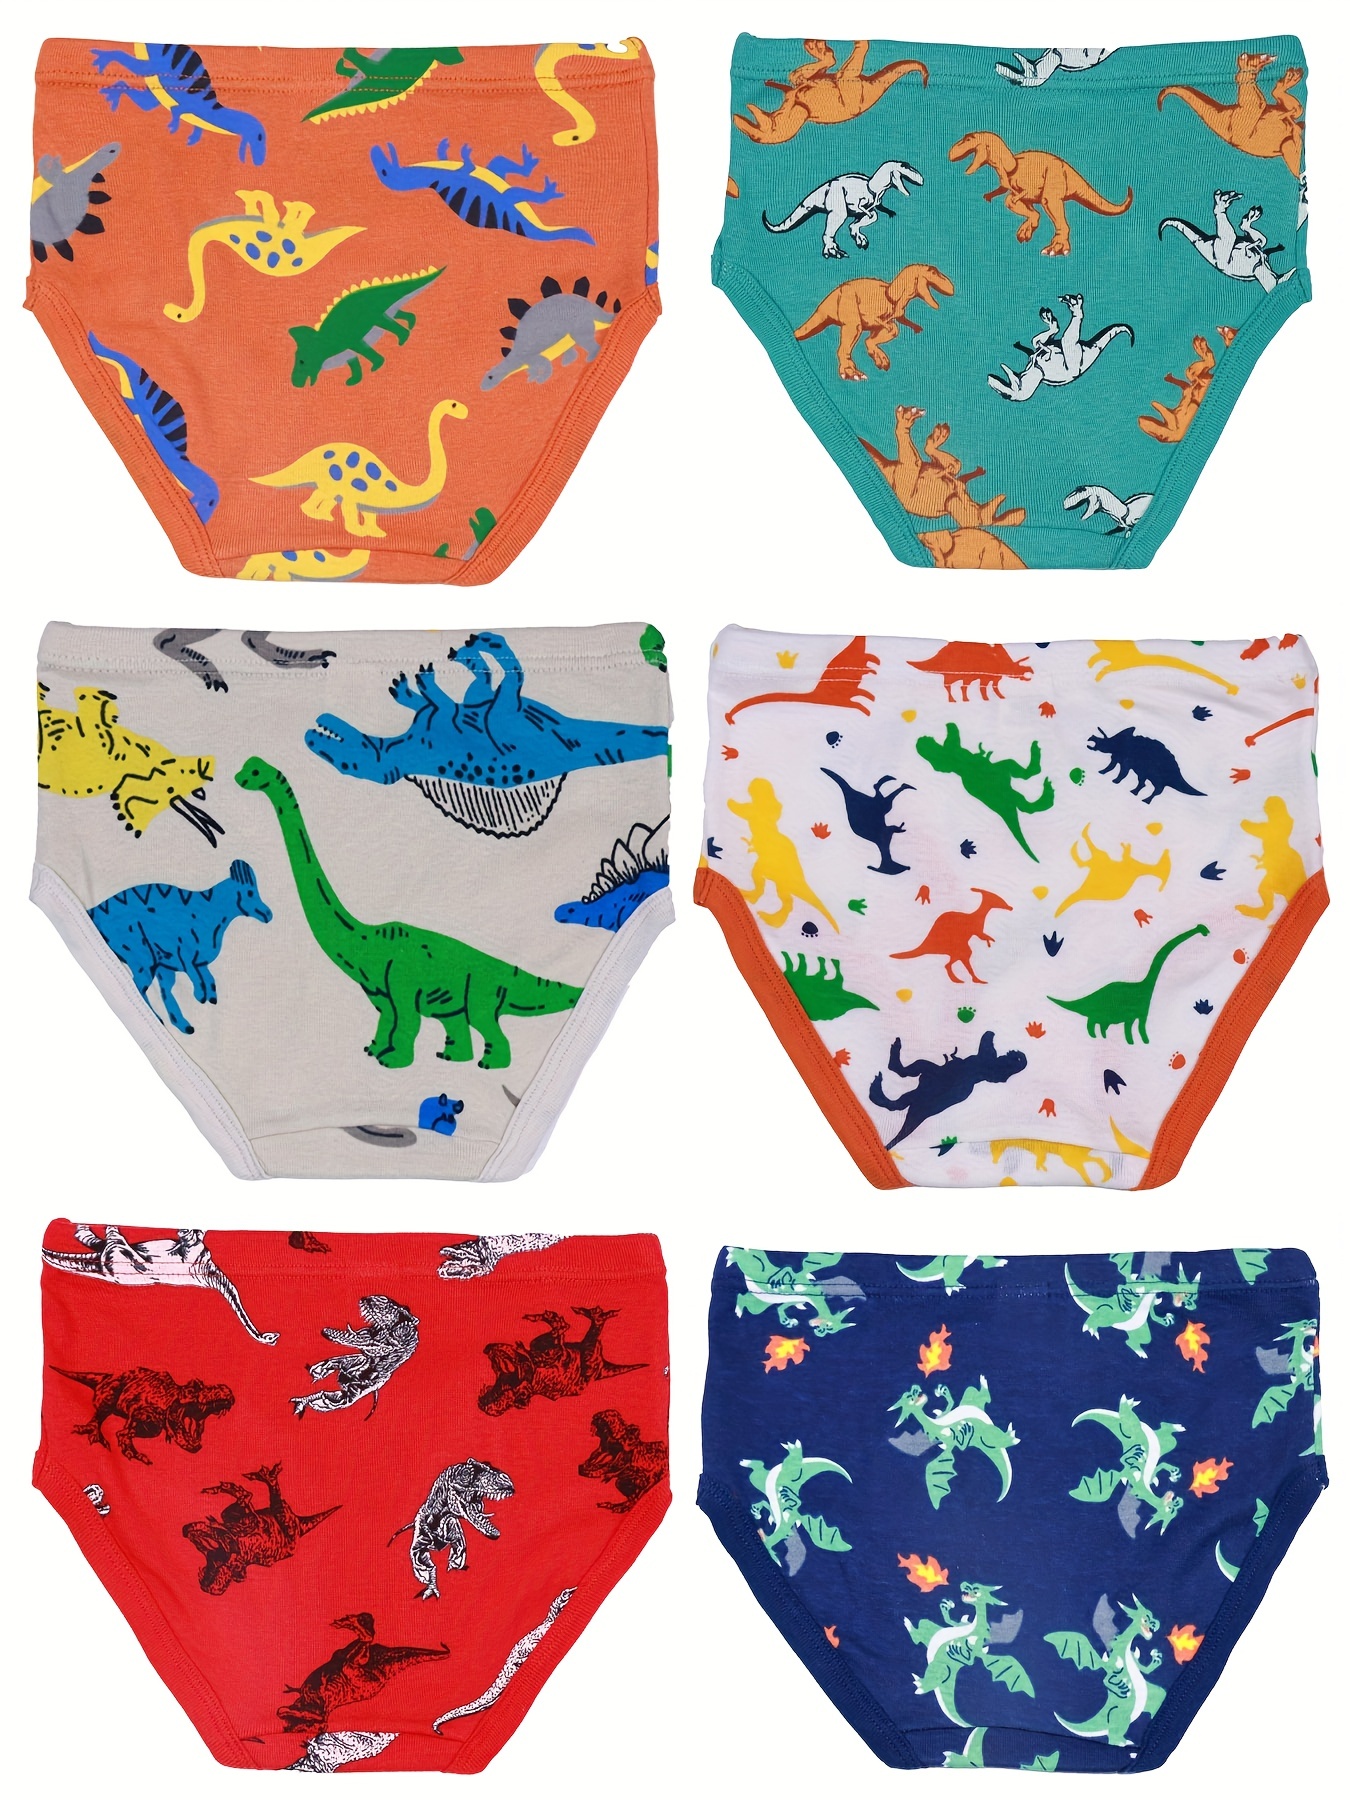 Baby Shark Underwear, 7-Pack (Toddler Girls)